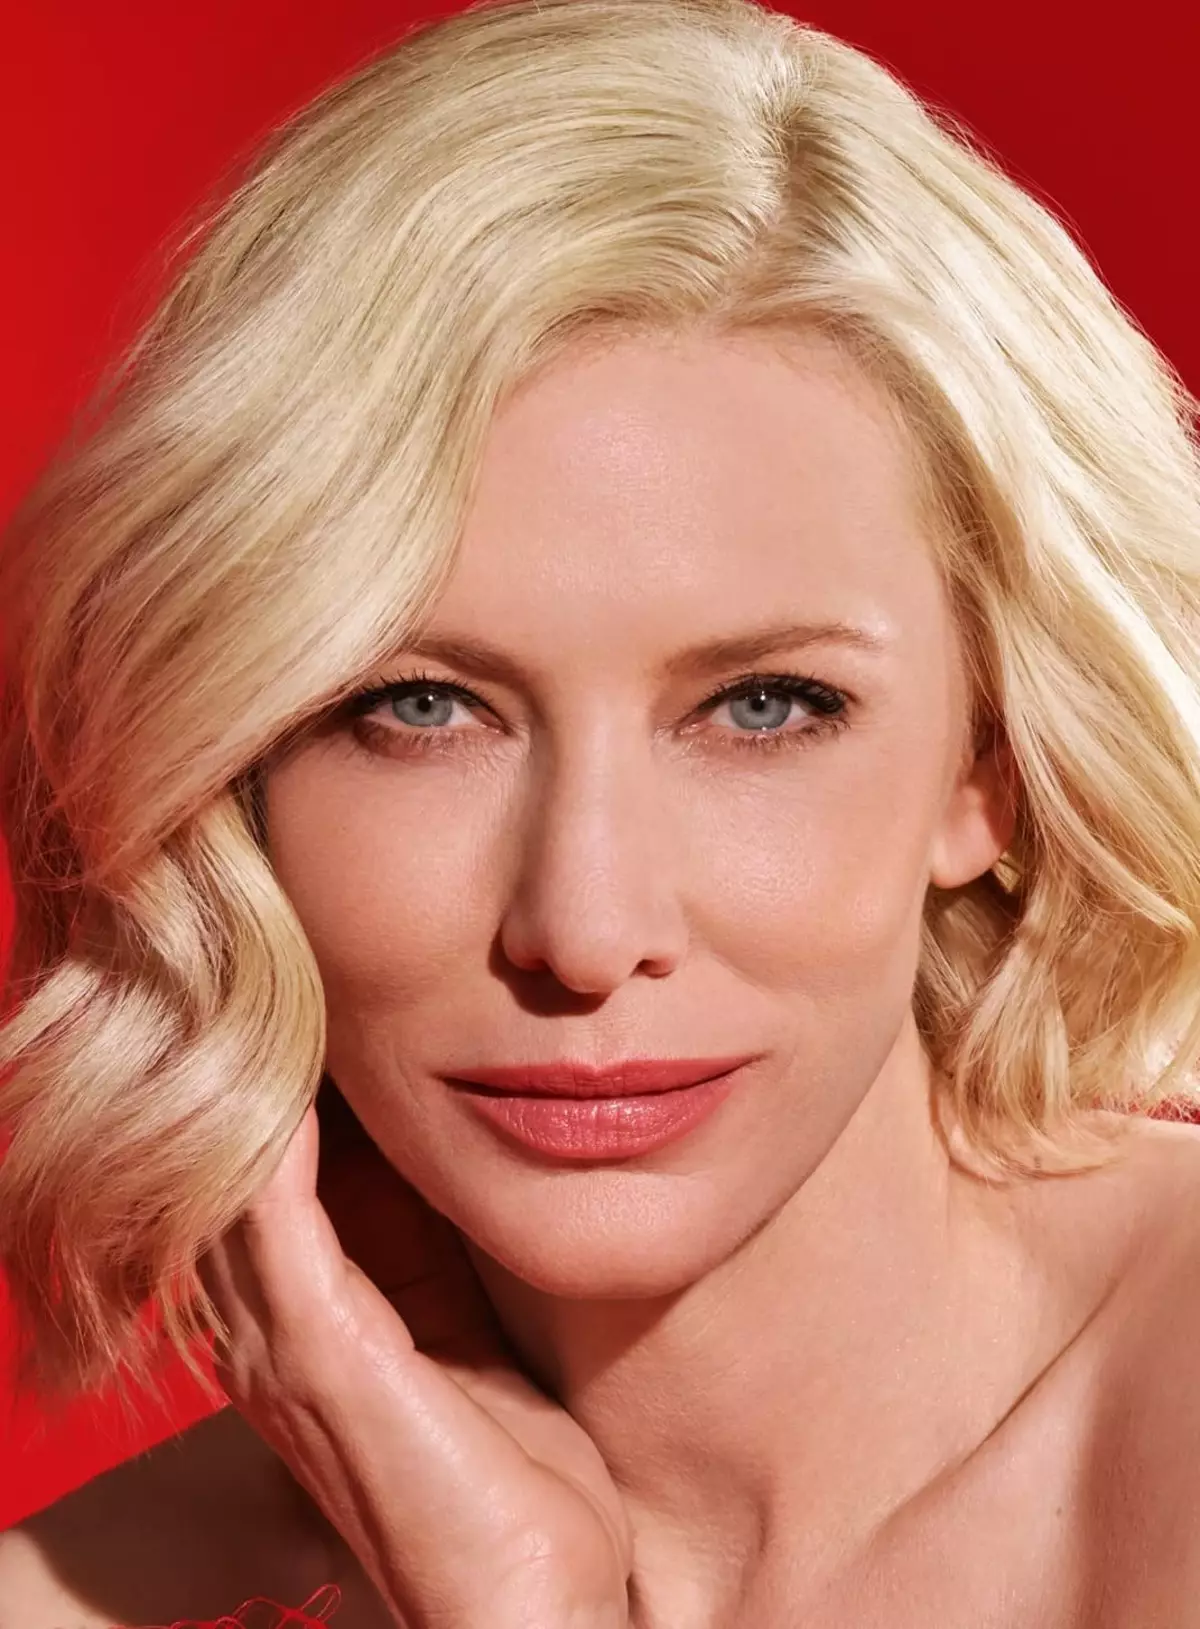 Kate Blanchett - Biografía, vida persoal, foto, noticias, actriz, películas, na mocidade 2021